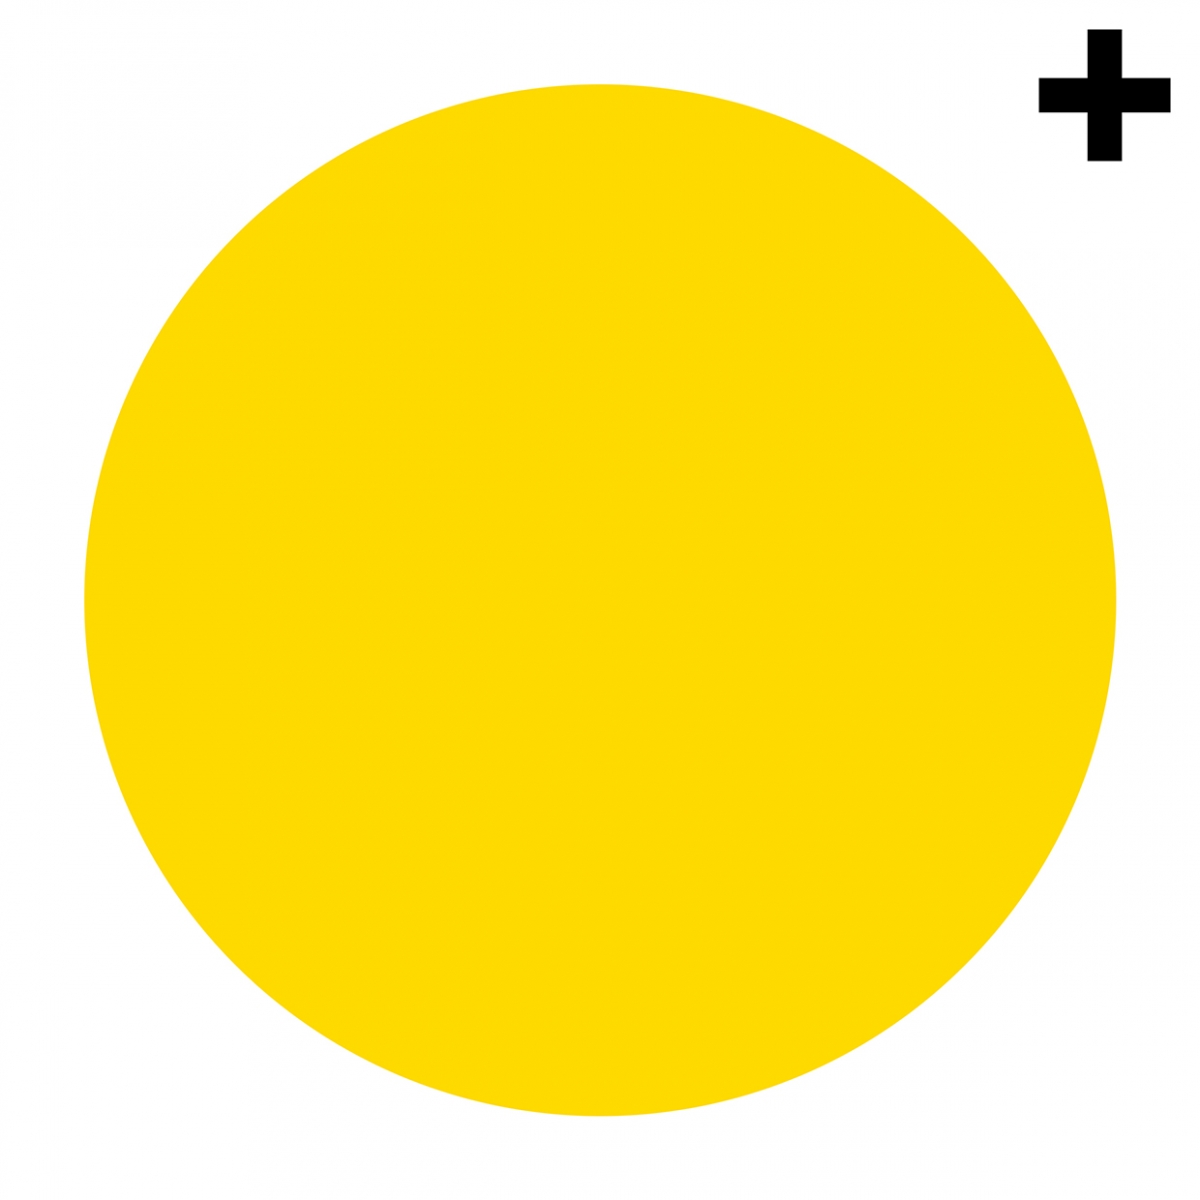 Imagen en la que se ve un círculo de color amarillo